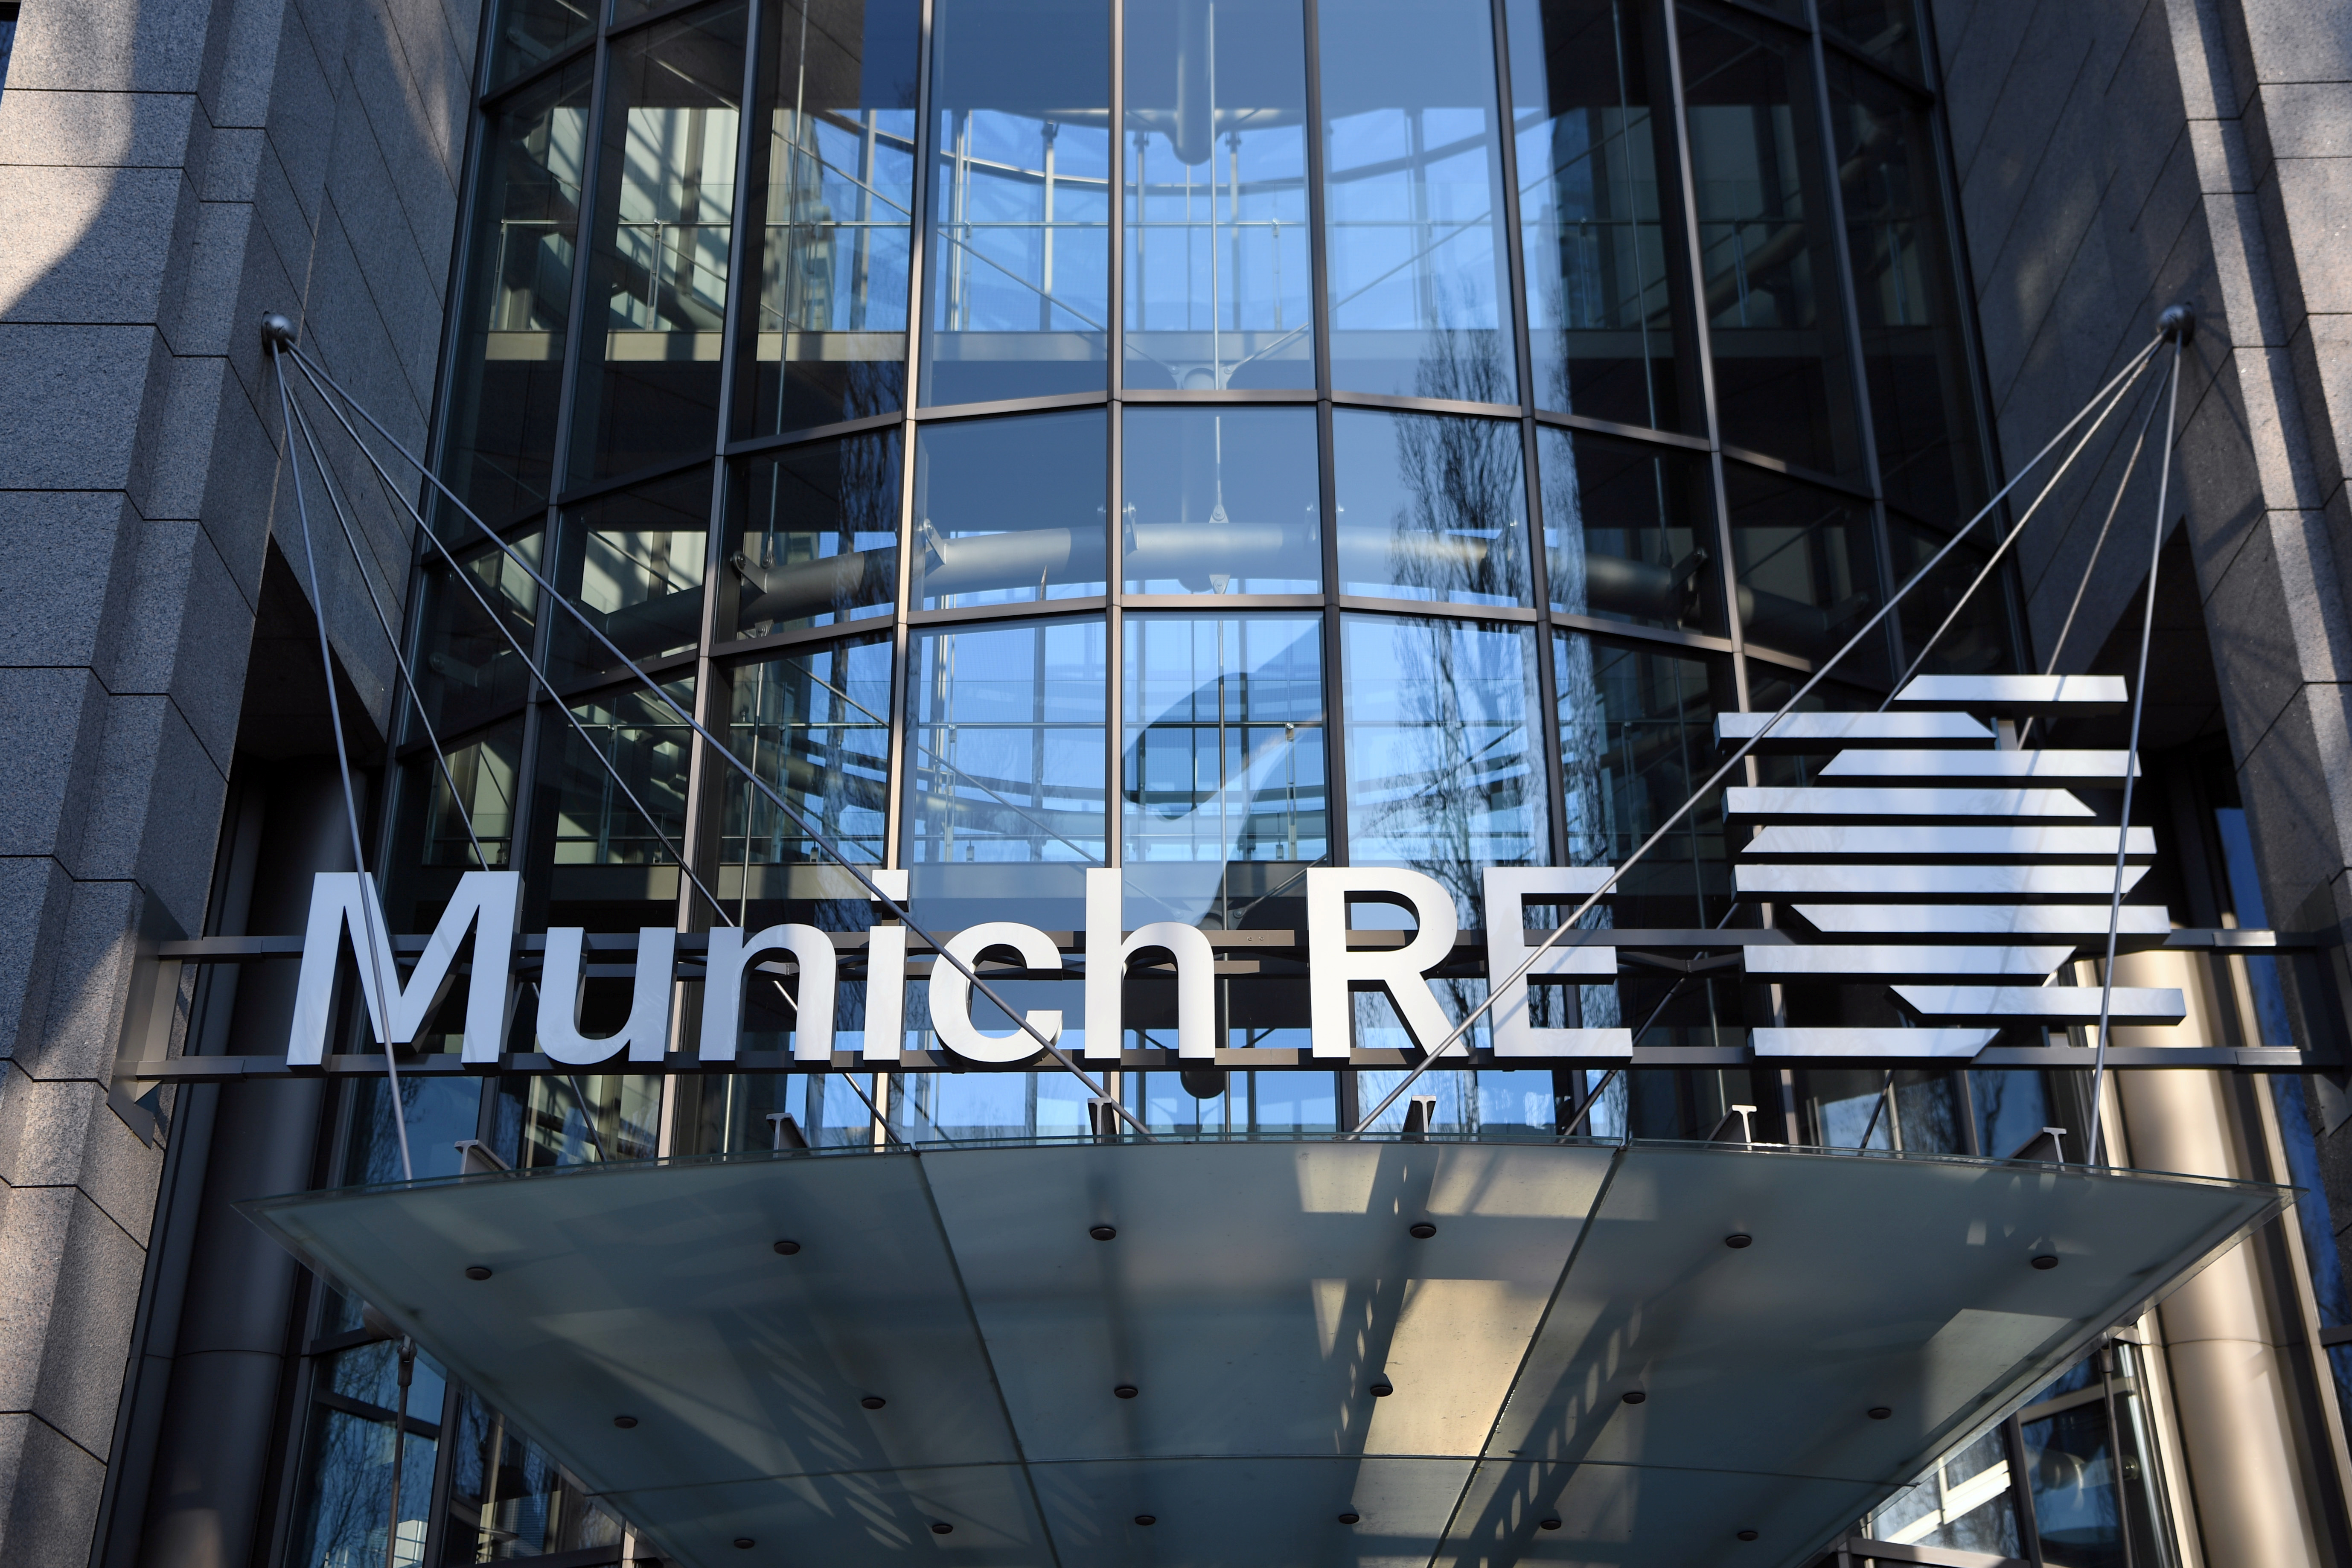 Le réassureur Munich Re améliore ses résultats avec moins de pertes liées aux sinistres